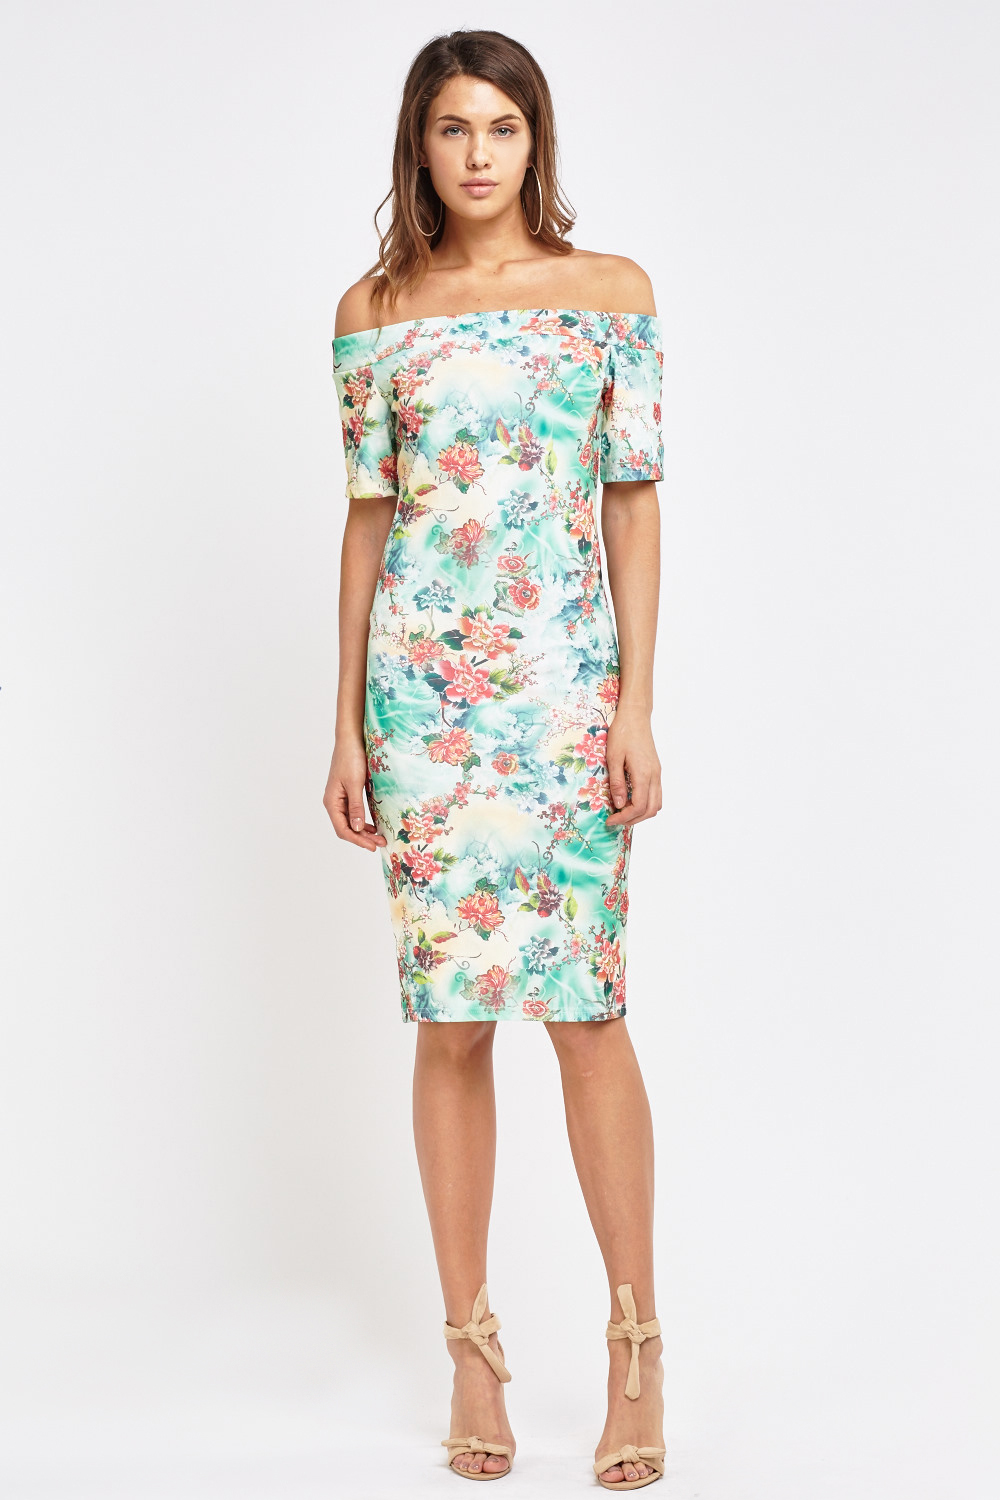 Floral Print Bardot Dress - Just $7